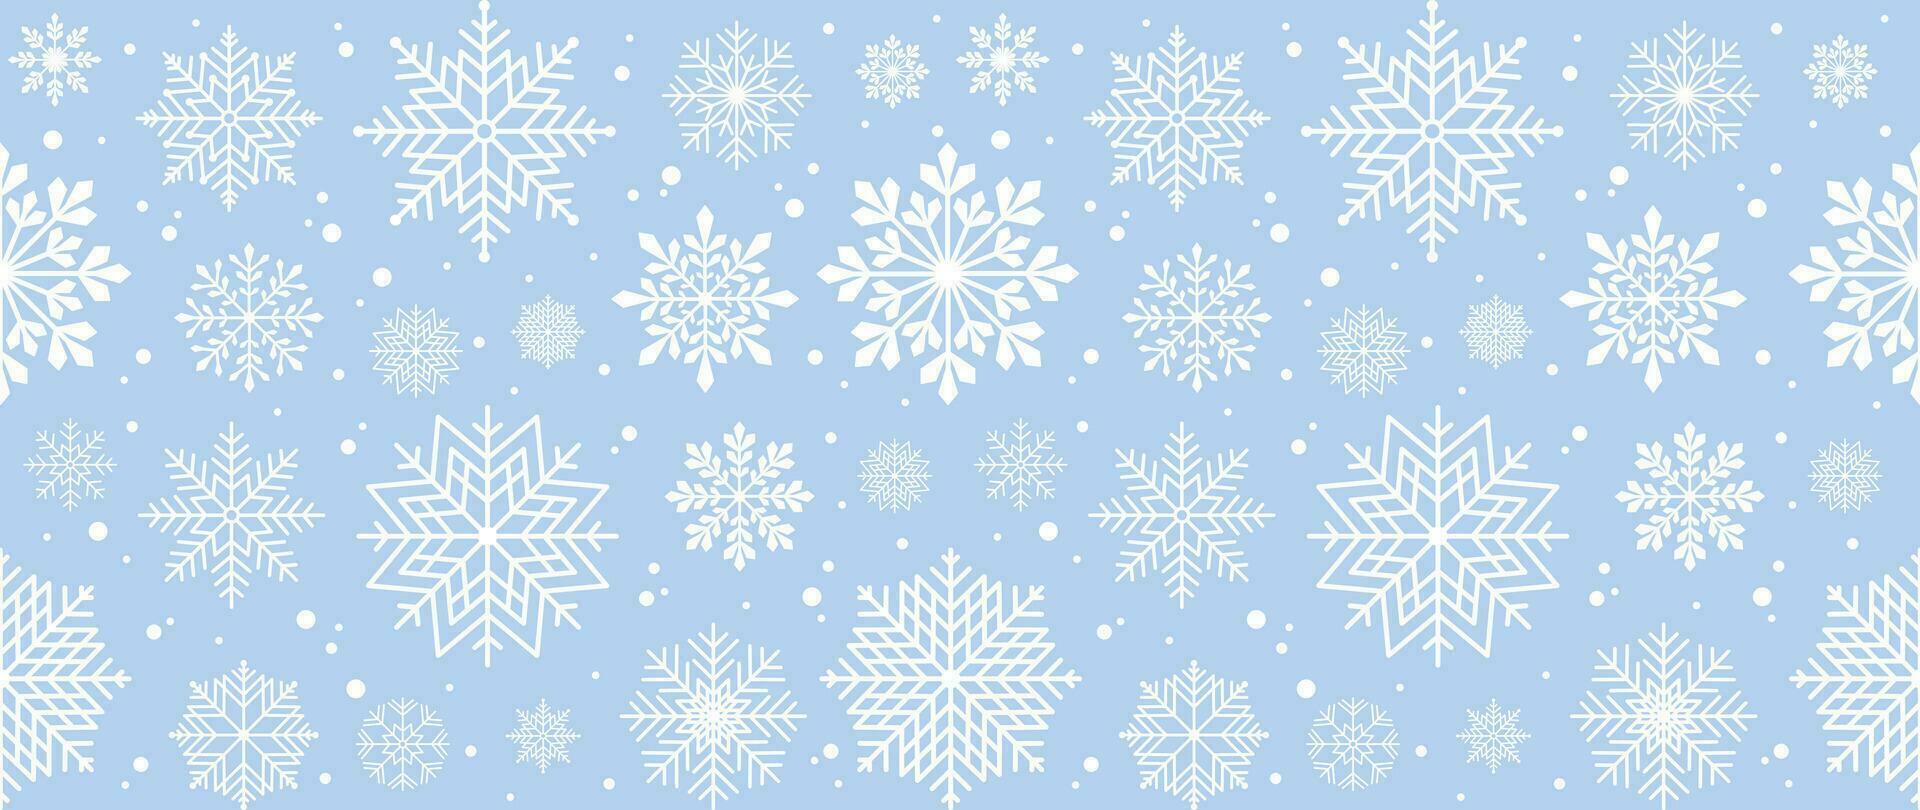 vinter- bakgrund med snöflingor och snö. sömlös mönster. vektor illustration för omslag, baner, affisch, webb, textilier och förpackning.